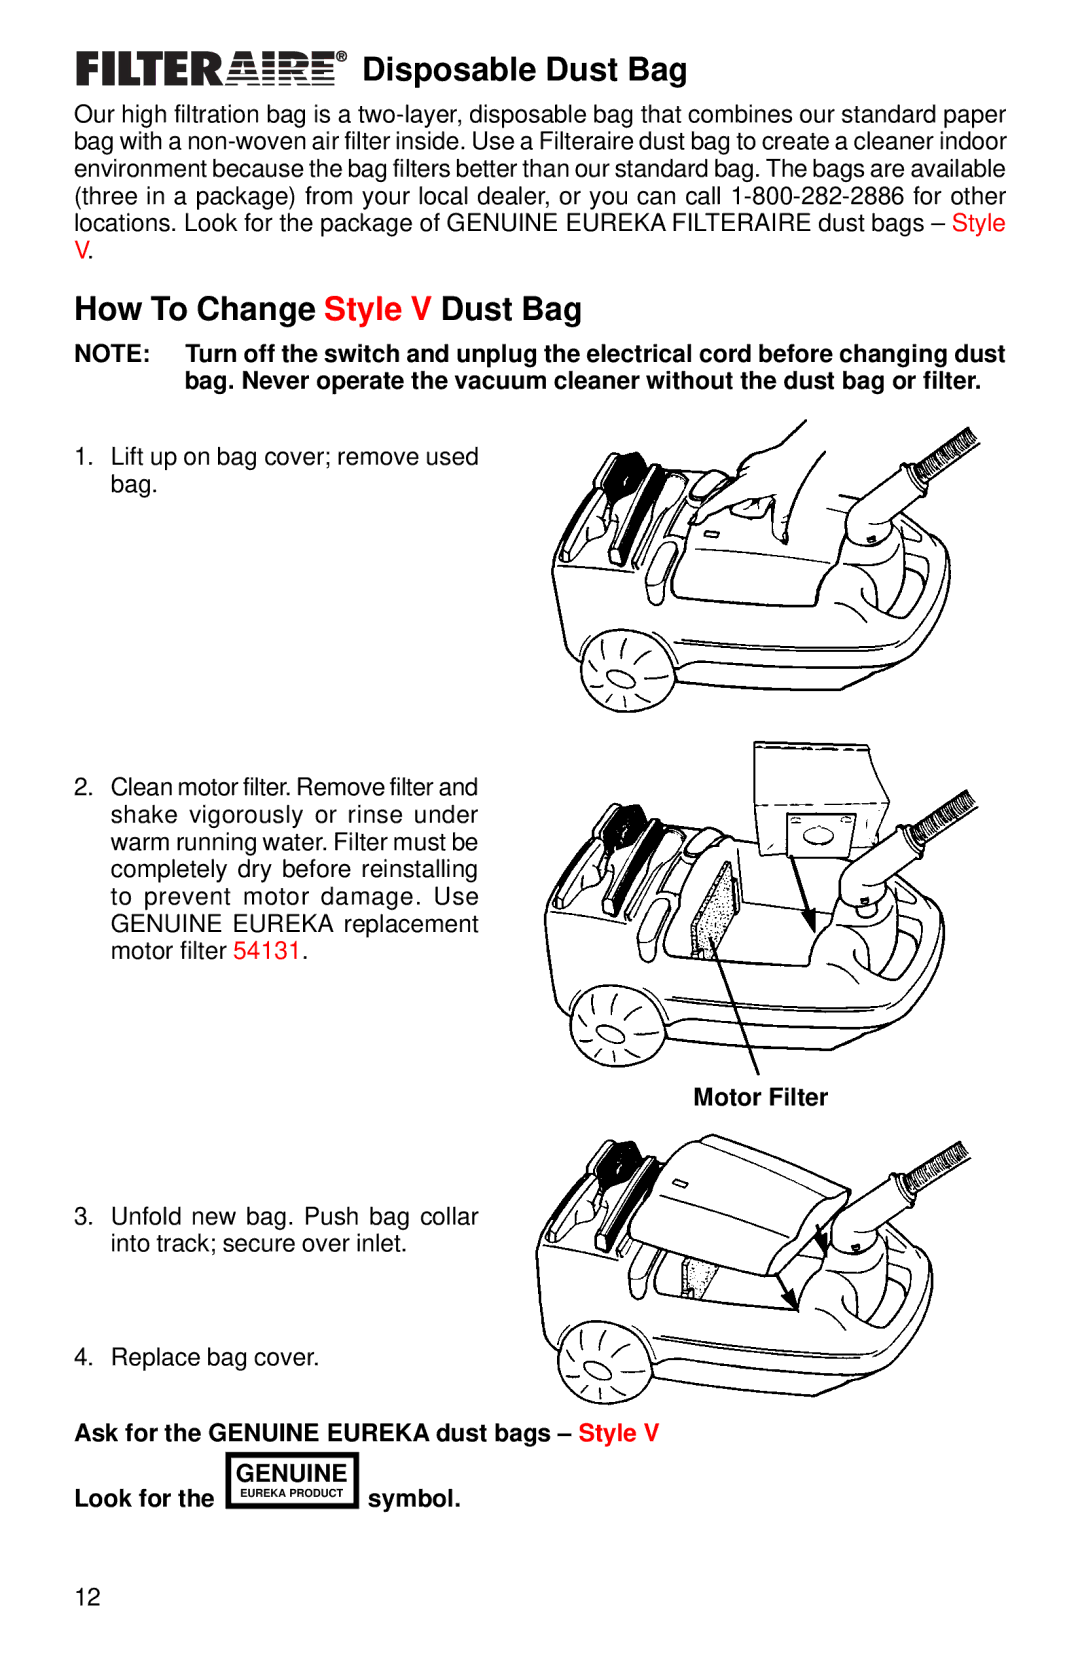 Eureka 6899, 6877, 6750, 6799 warranty Disposable Dust Bag, How To Change Style V Dust Bag, Motor Filter, Symbol 